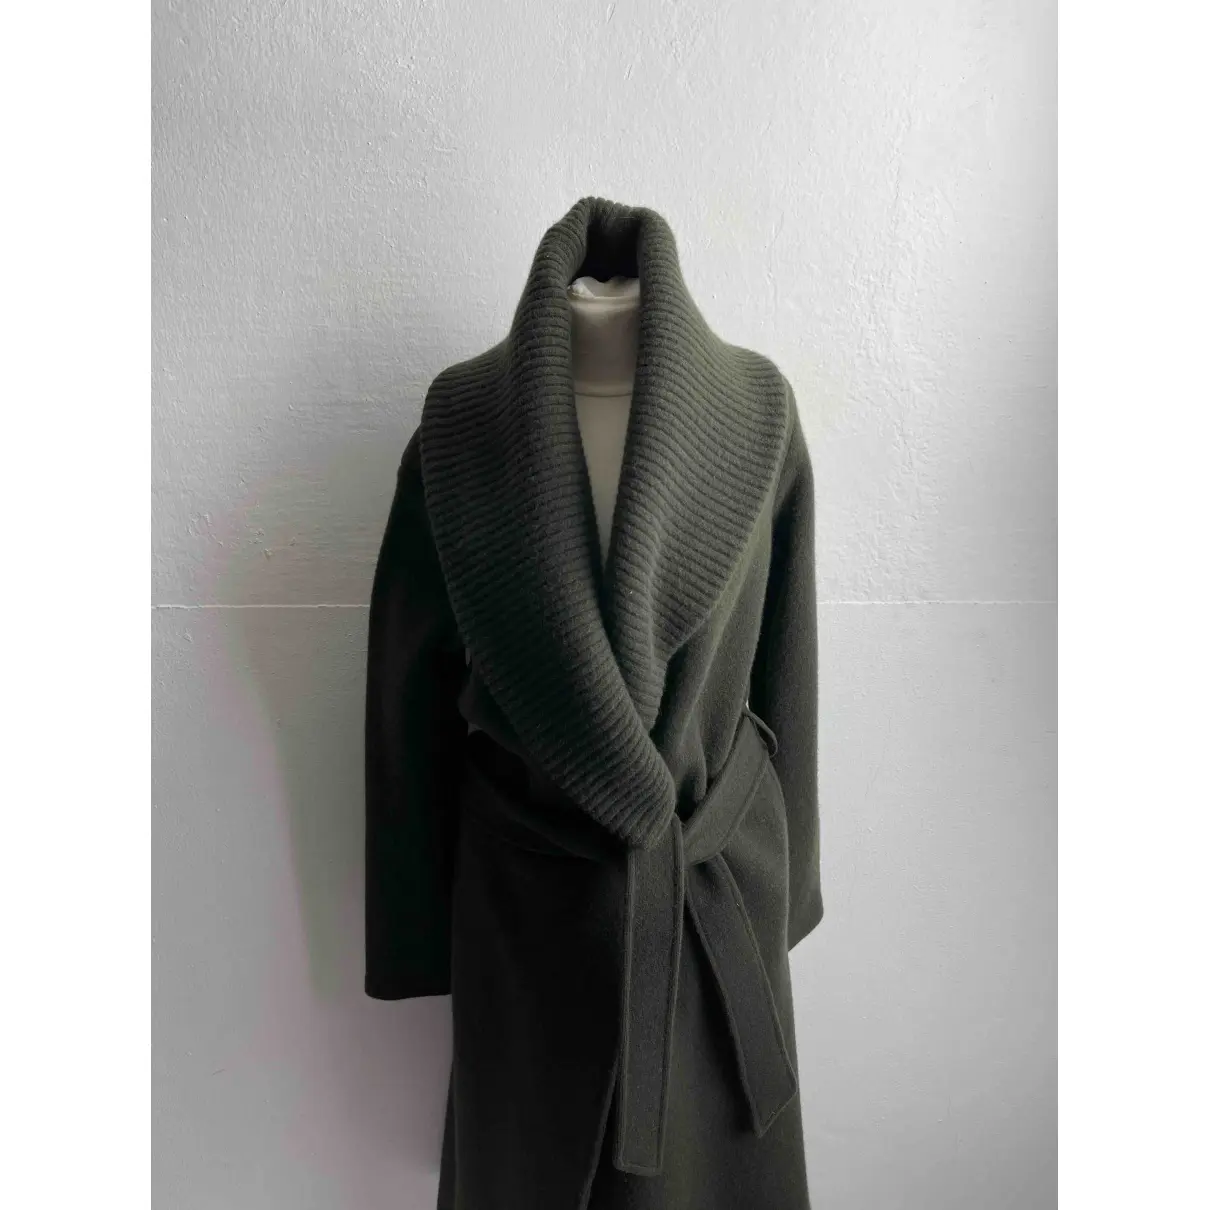 Buy Ralph Lauren Wool coat online - Vintage